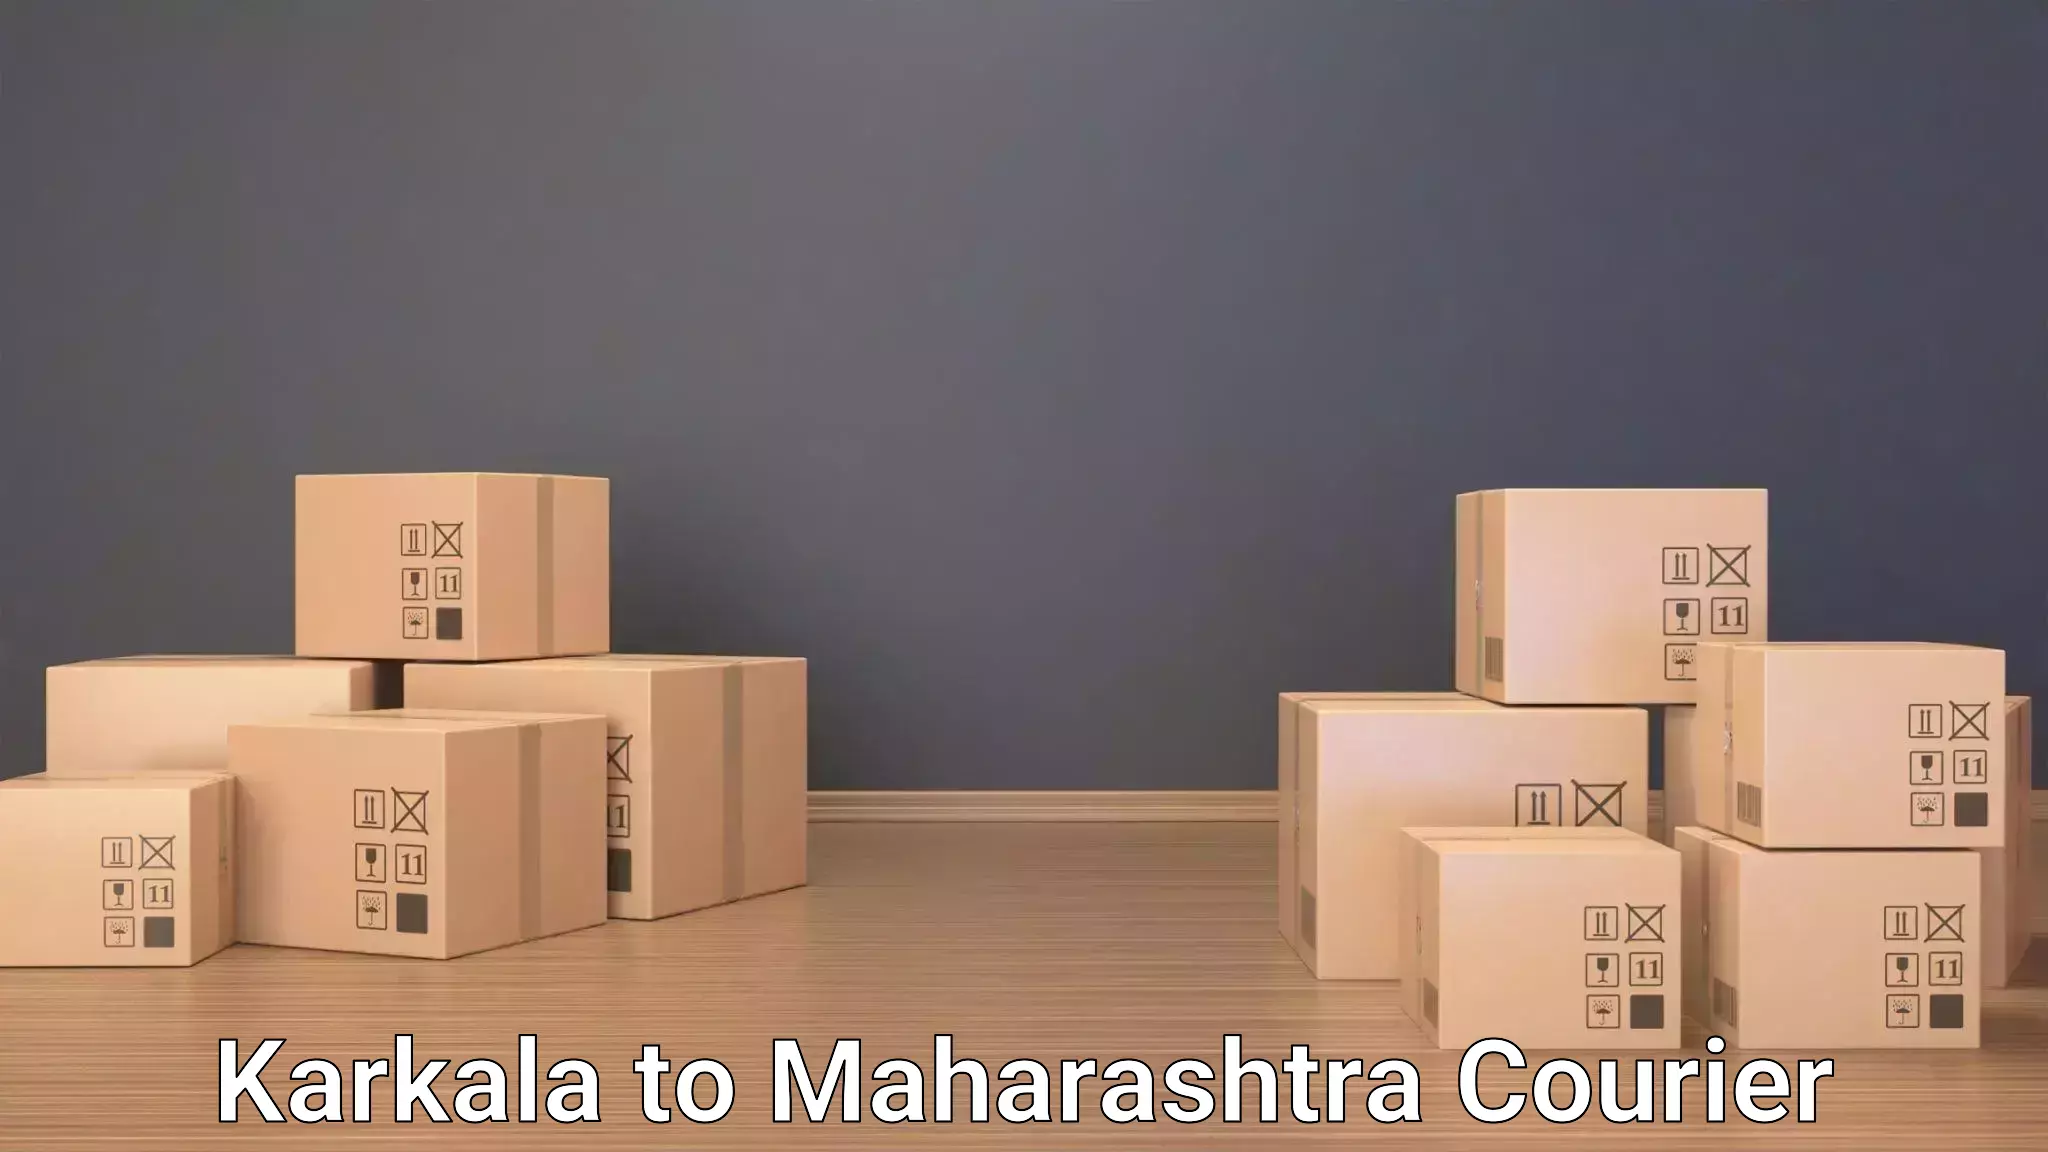 Luggage shipment tracking Karkala to IIIT Pune